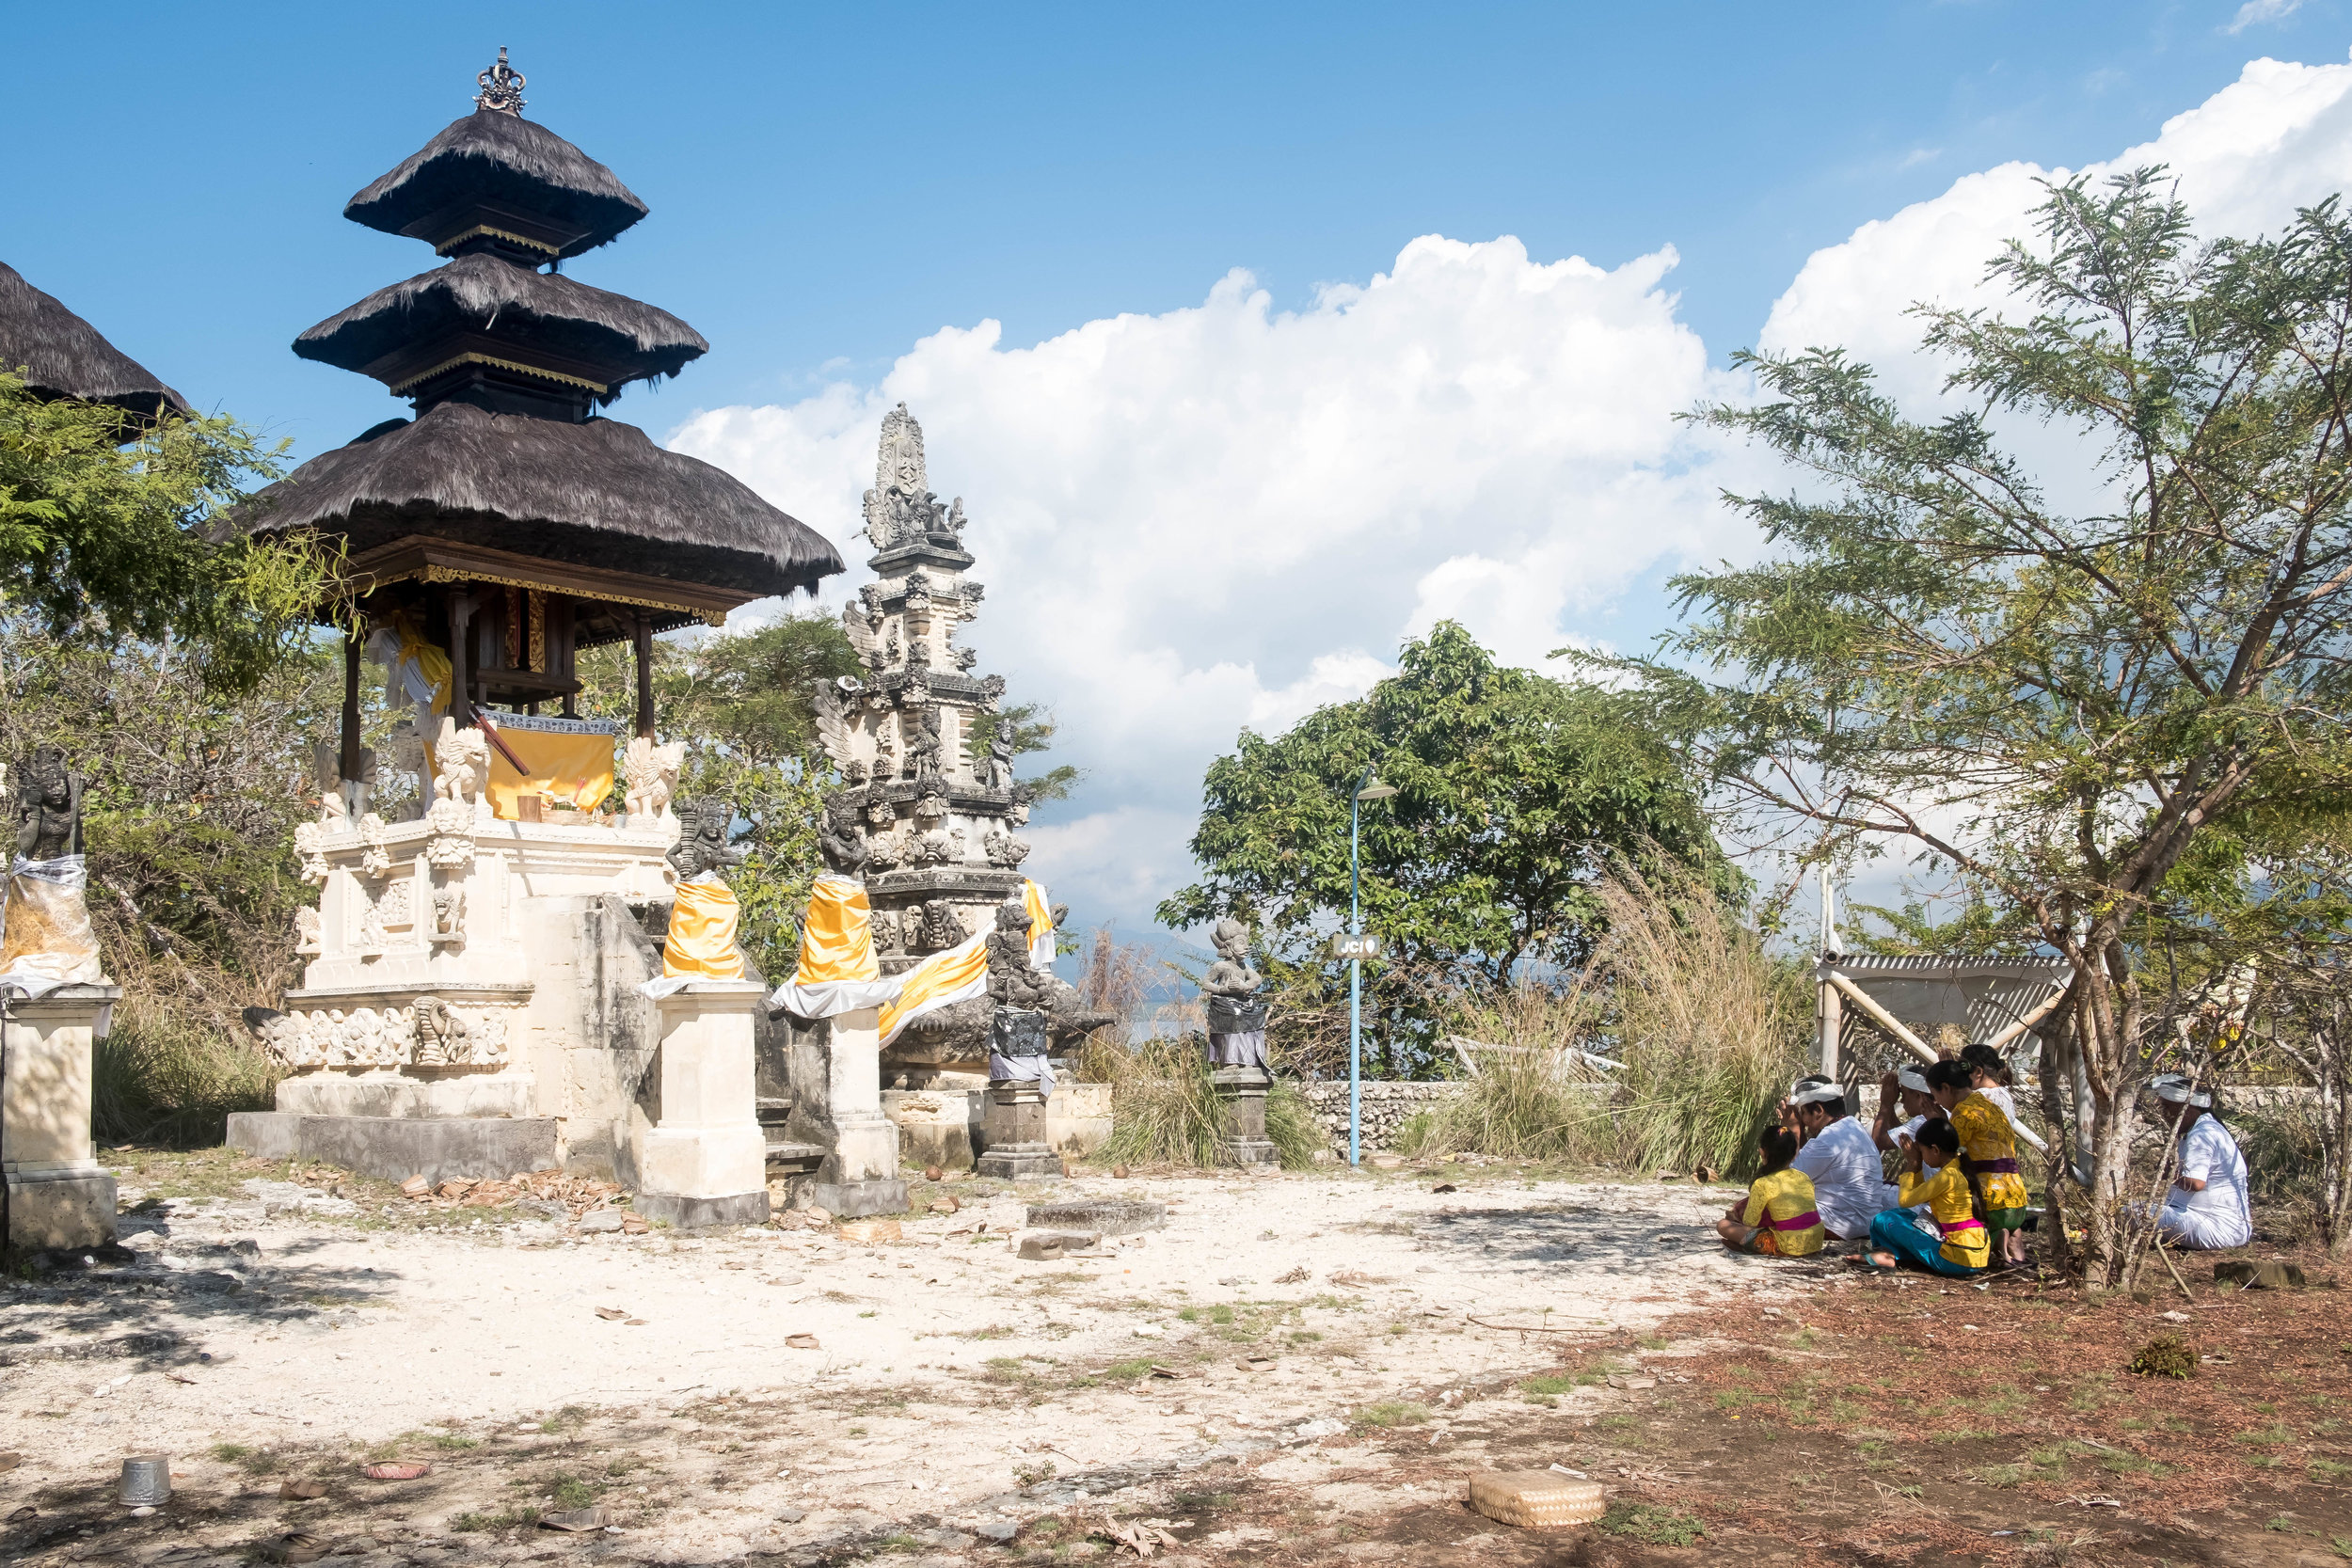  Balinese family praying 